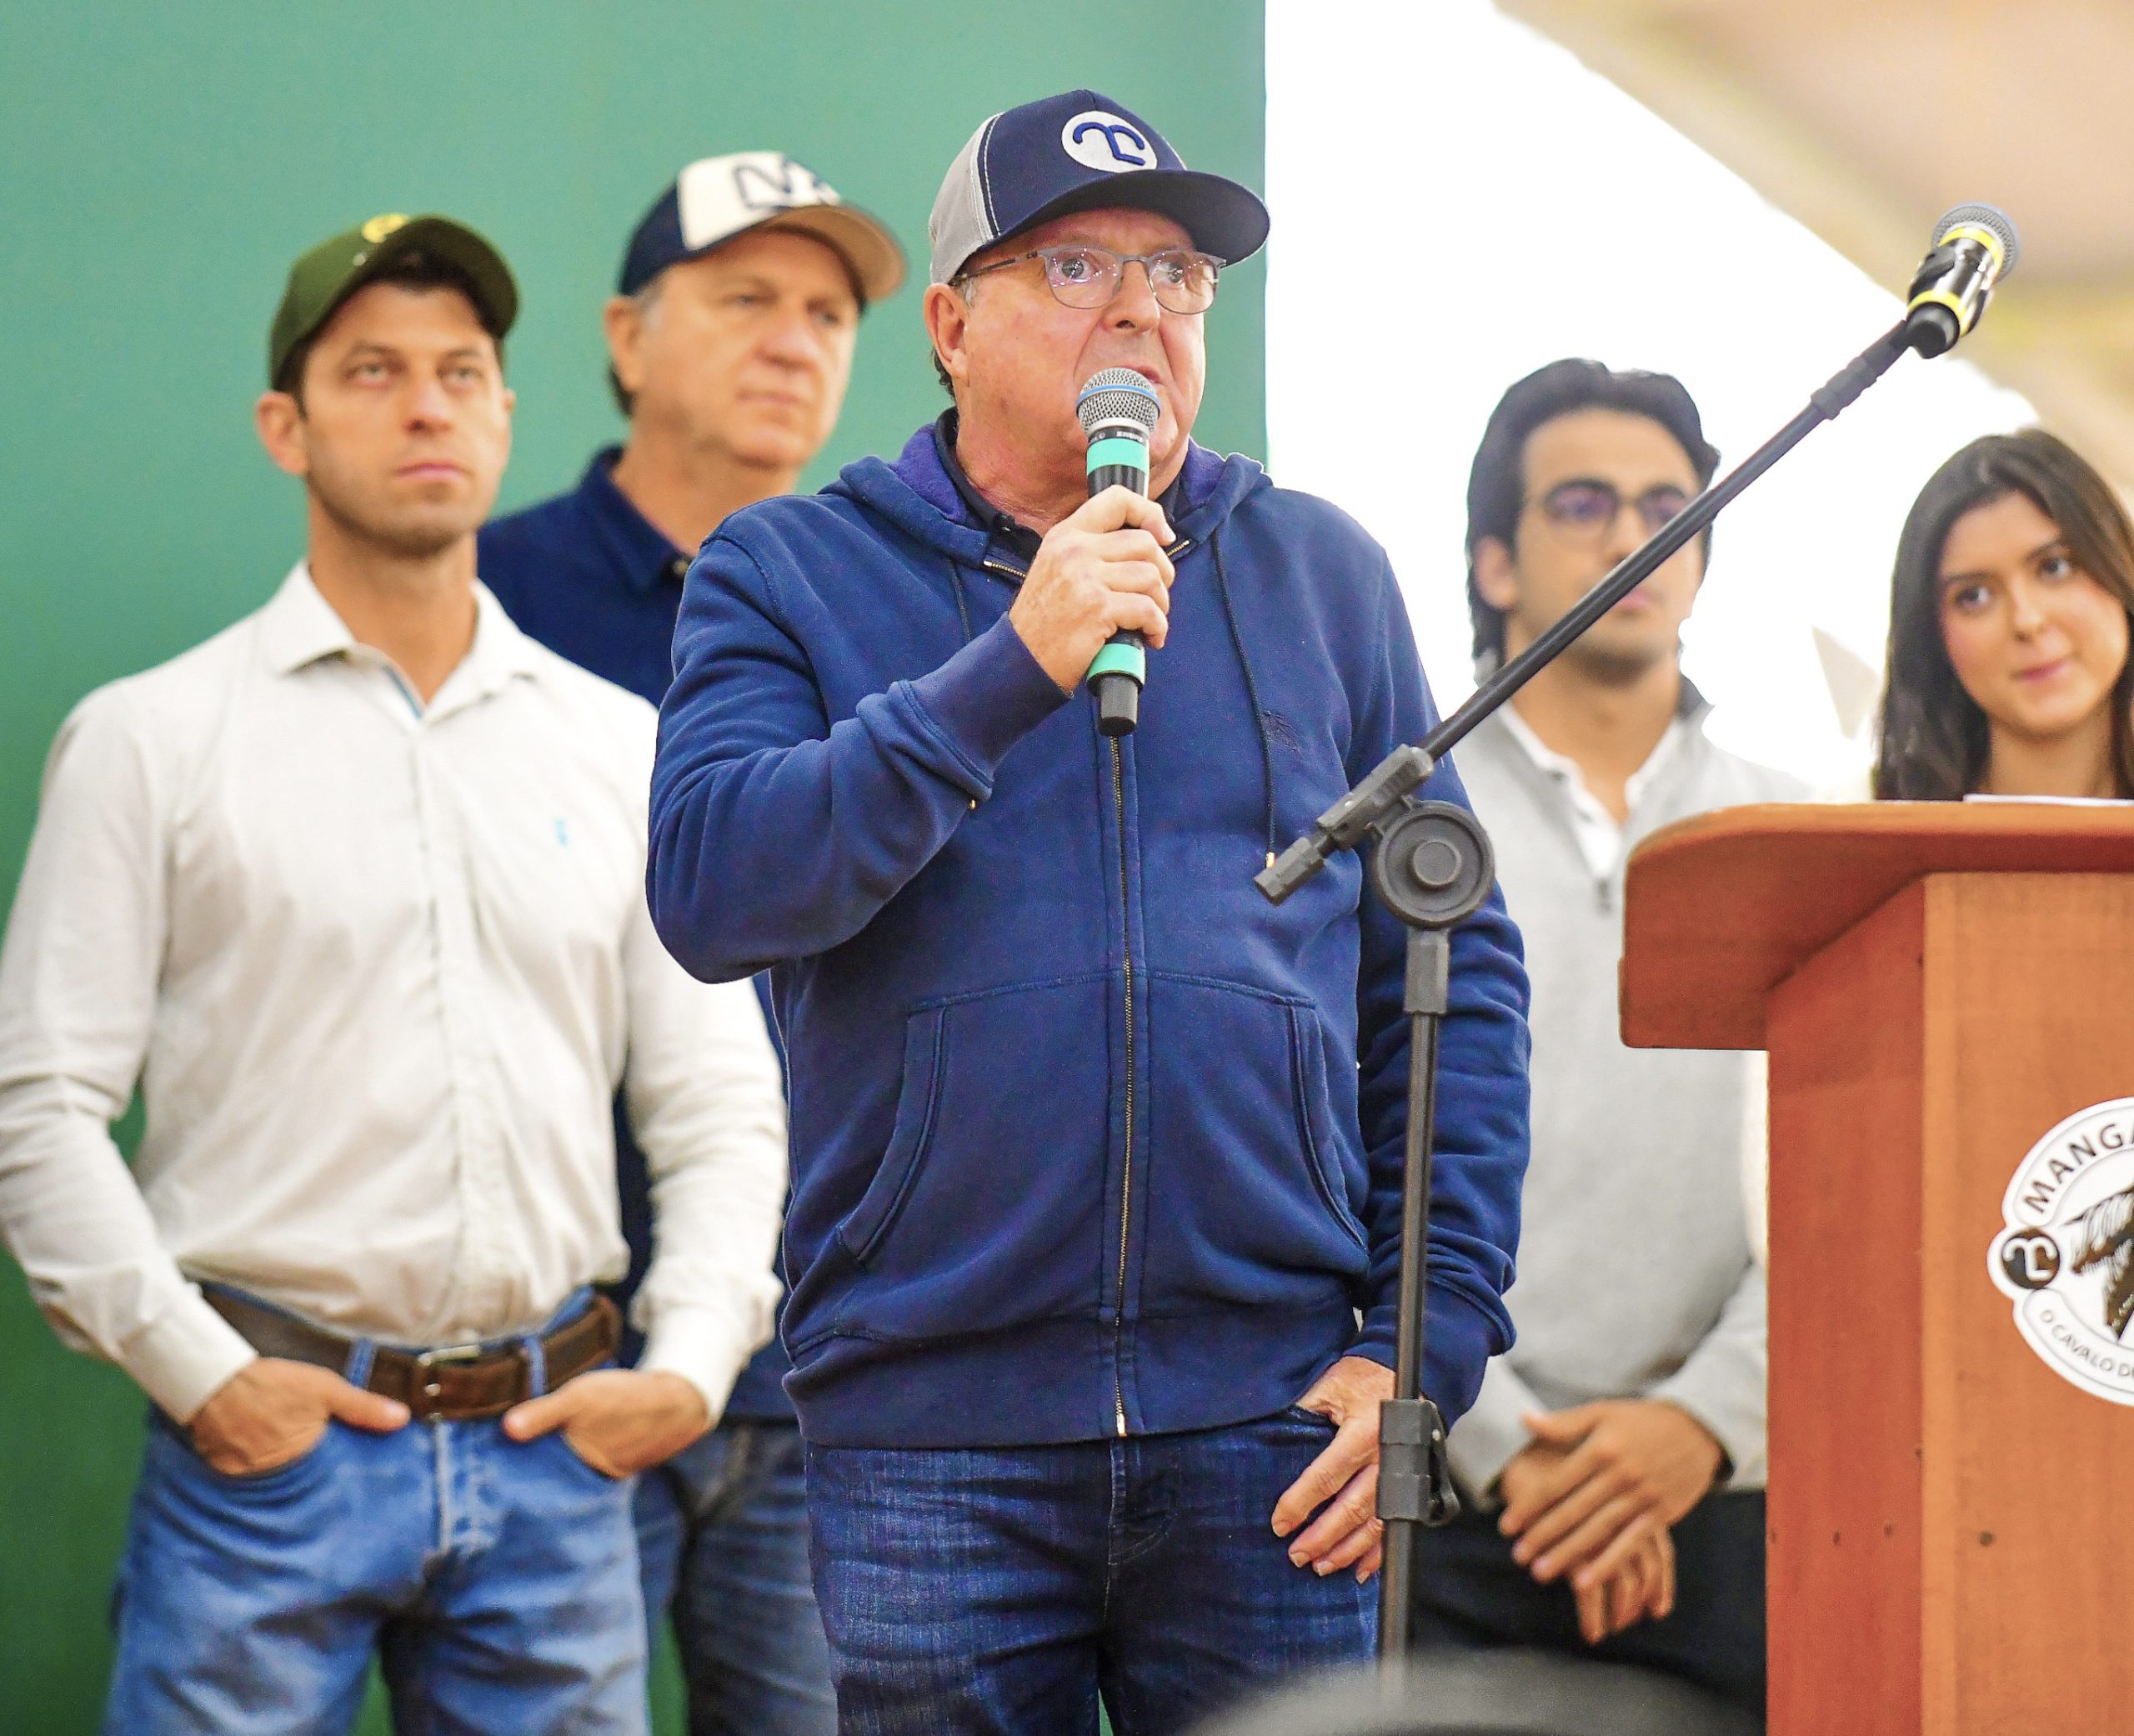 Presidente da ABCCRM apresenta avanços da Raça Mangalarga durante evento em Tatuí (SP)